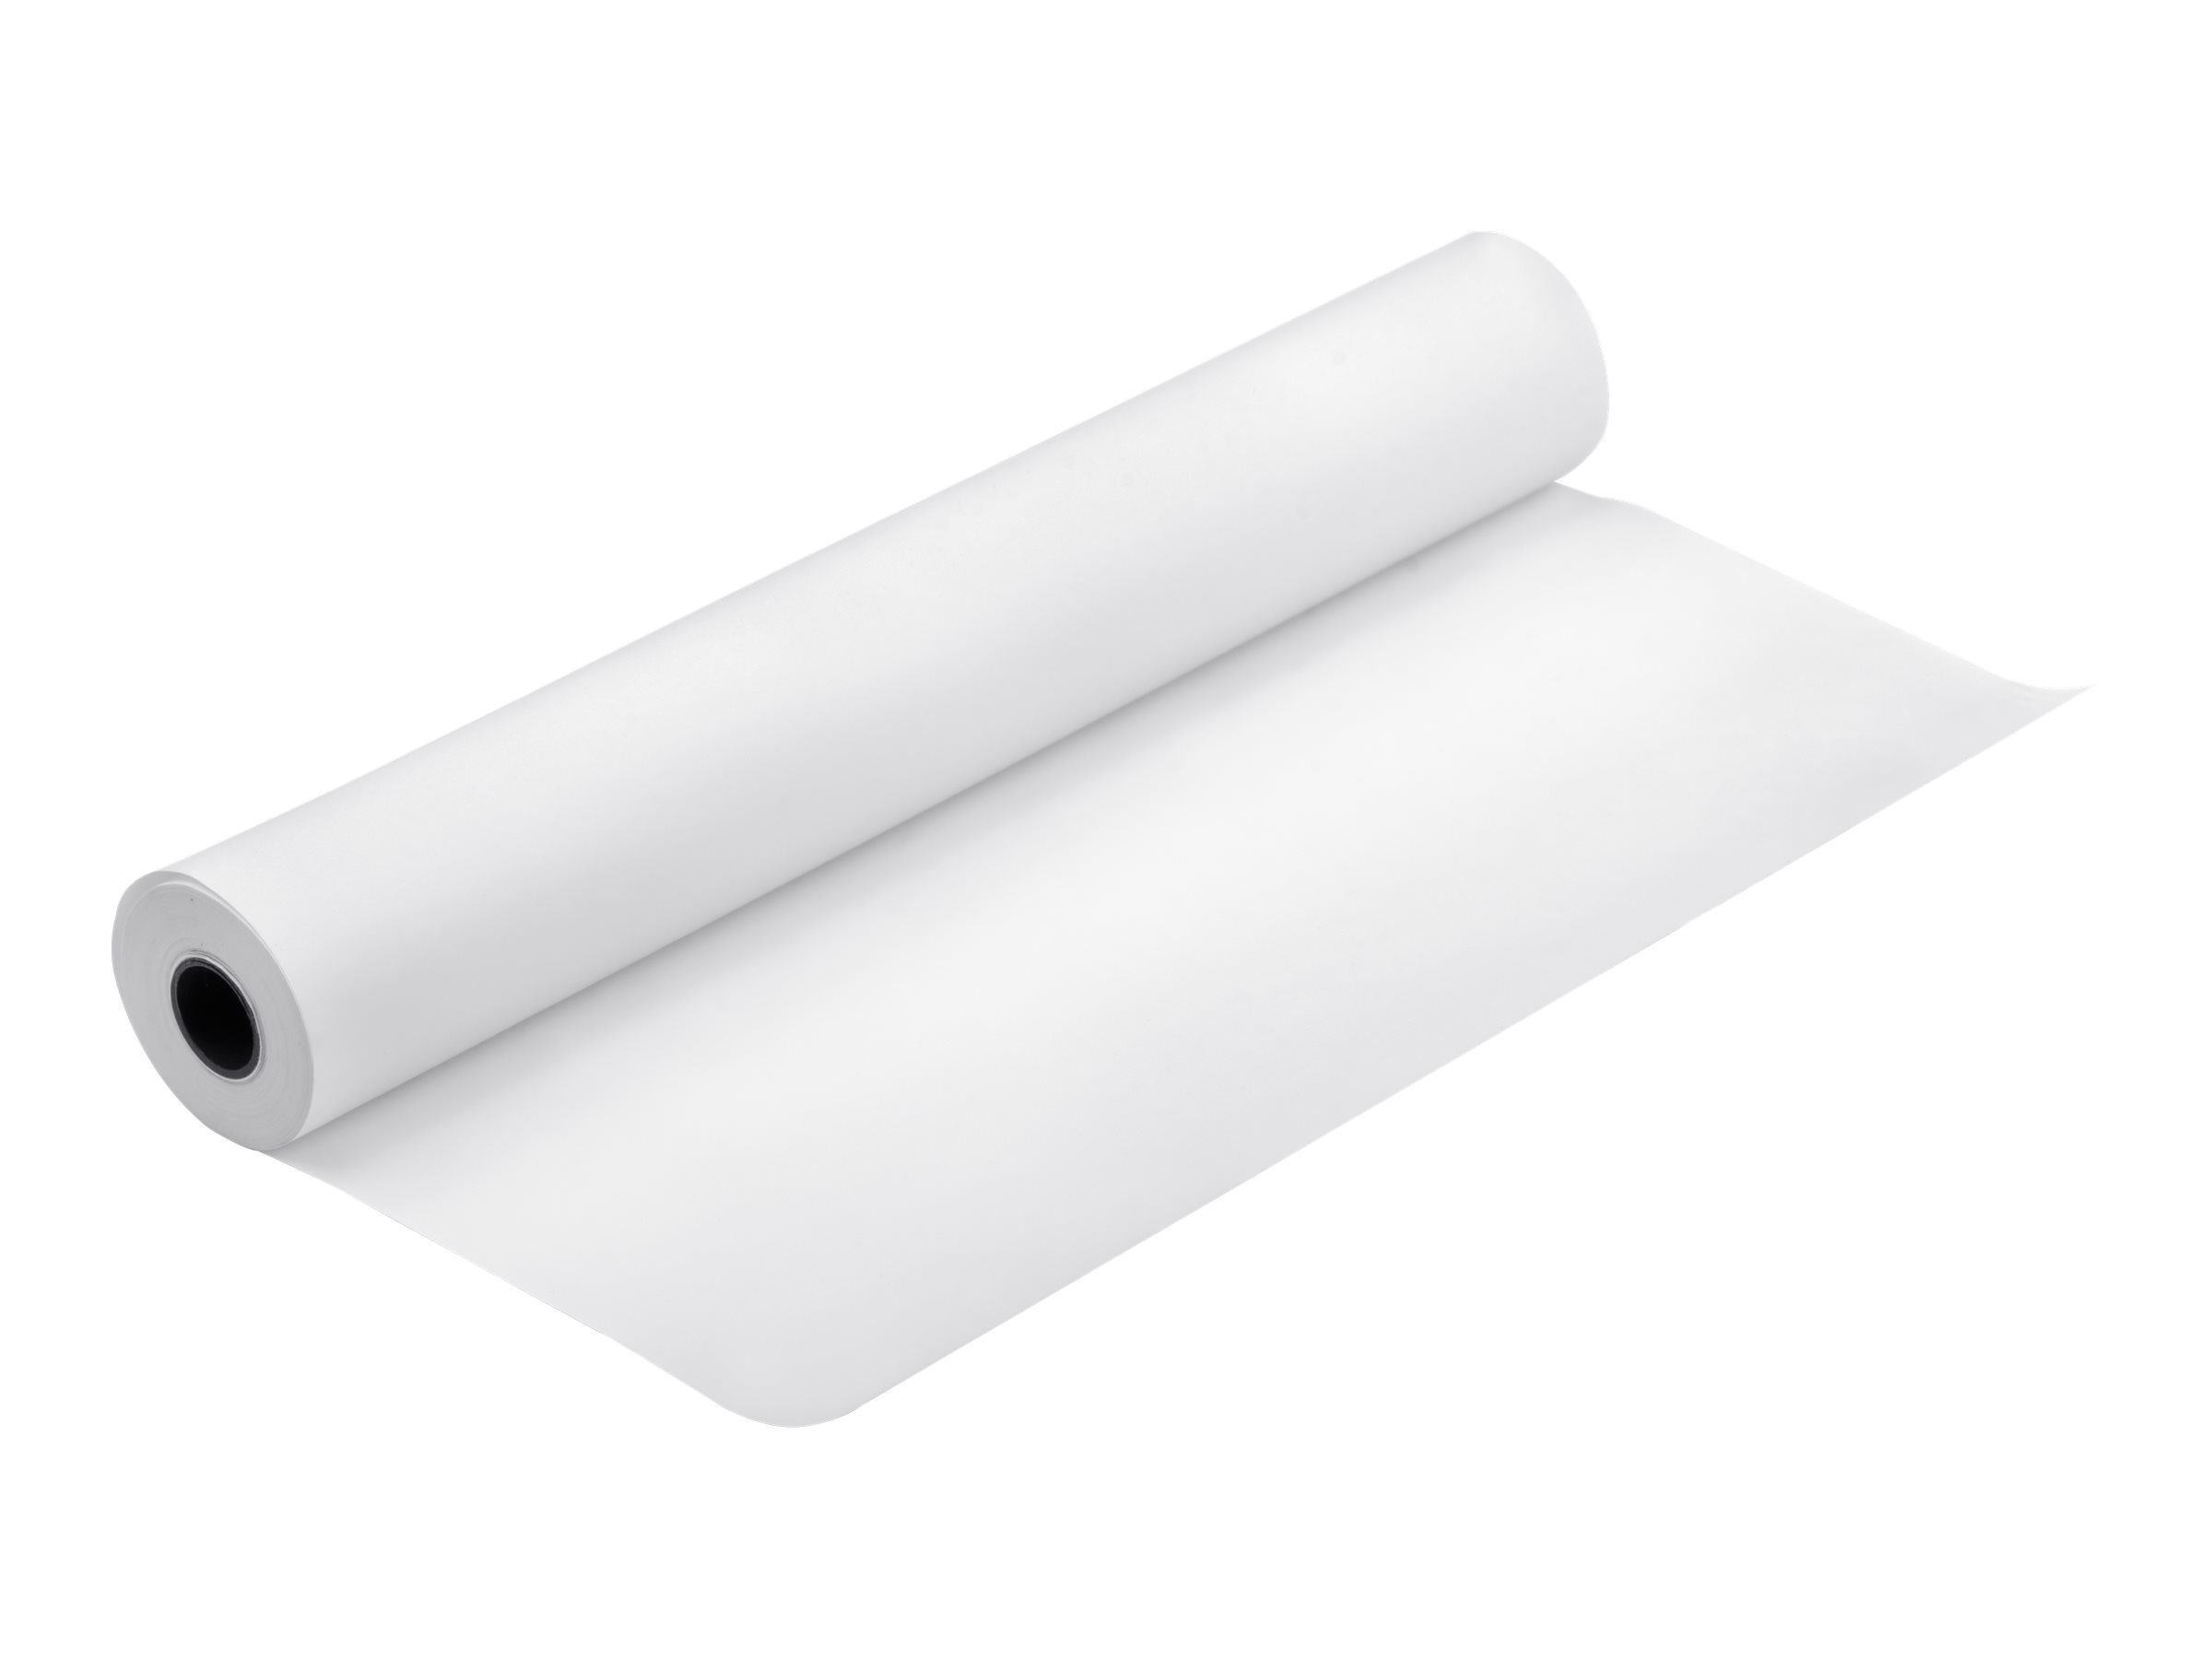 Epson Bond Paper Bright 90 - Rolle A1 (61,0 cm x 50 m) - 90 g/m² - 1 Rolle(n) Bondpapier - für SureColor SC-P20000, T2100, T3100, T3200, T3400, T3405, T5100, T5200, T5400, T5405, T7200